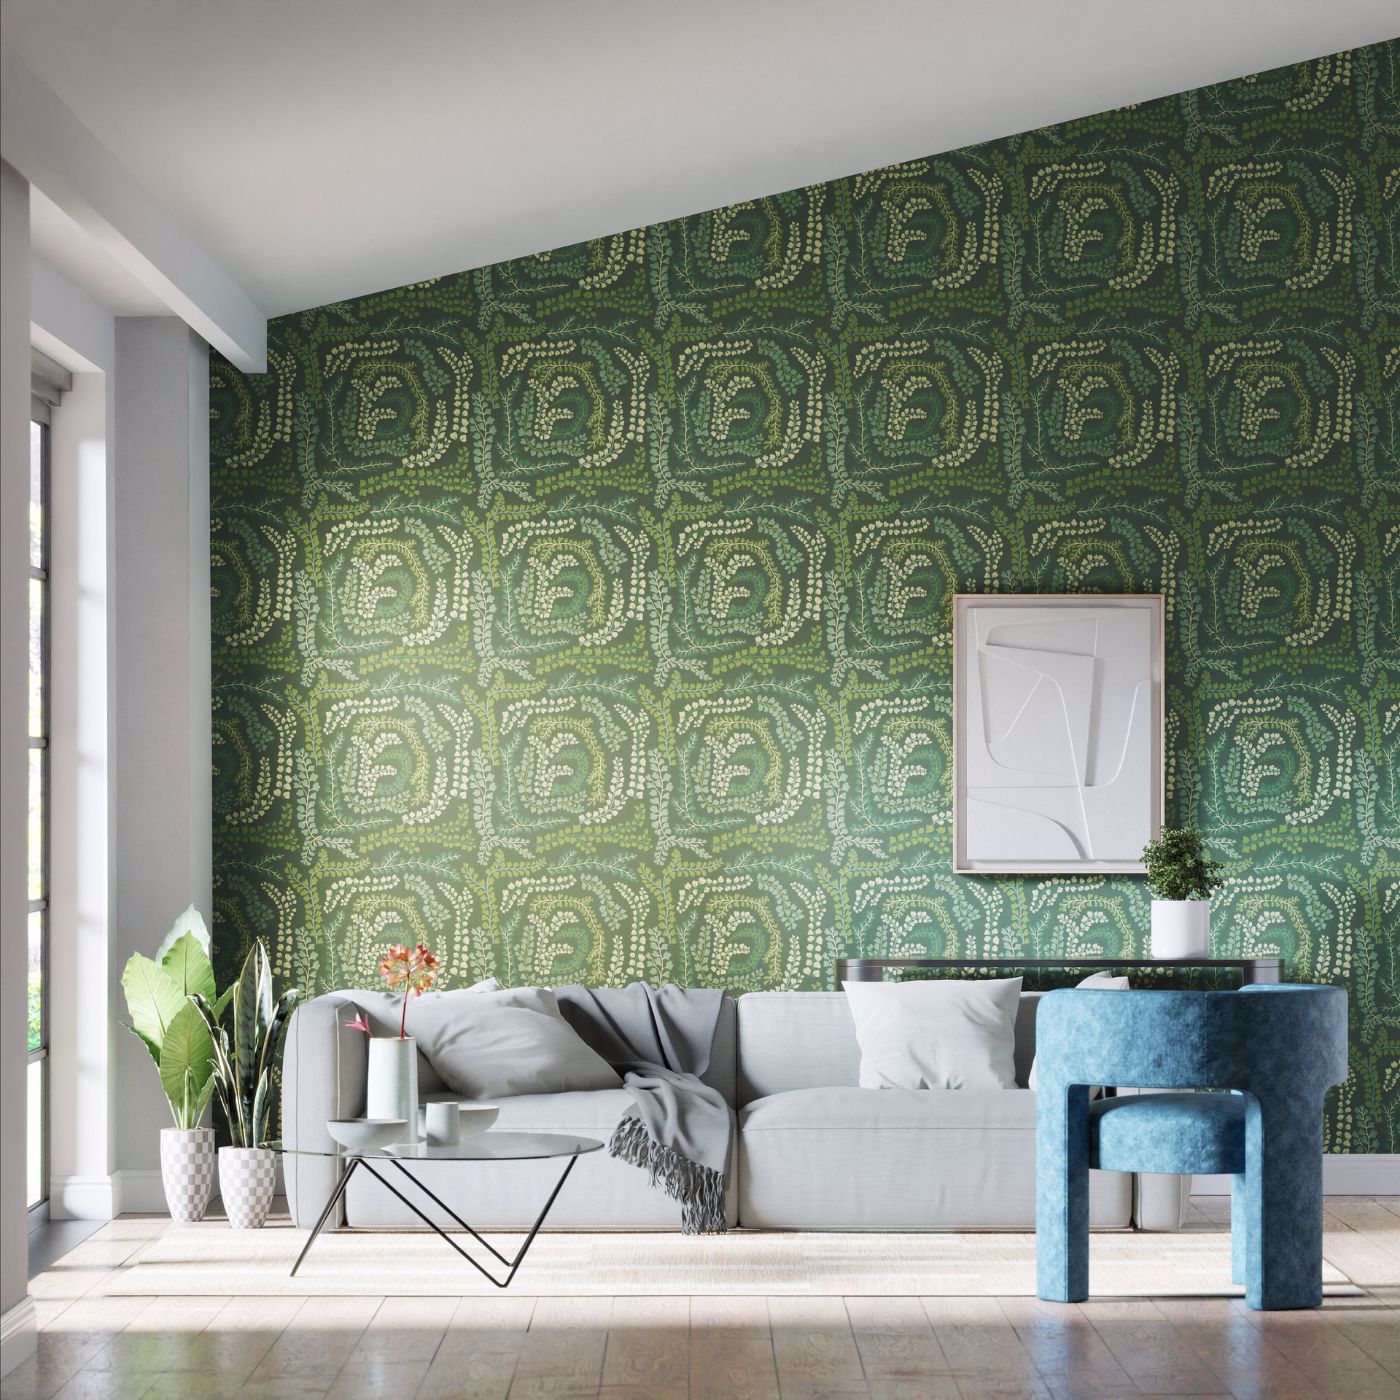 Fayola Room Wallpaper - Fig Leaf/Clover